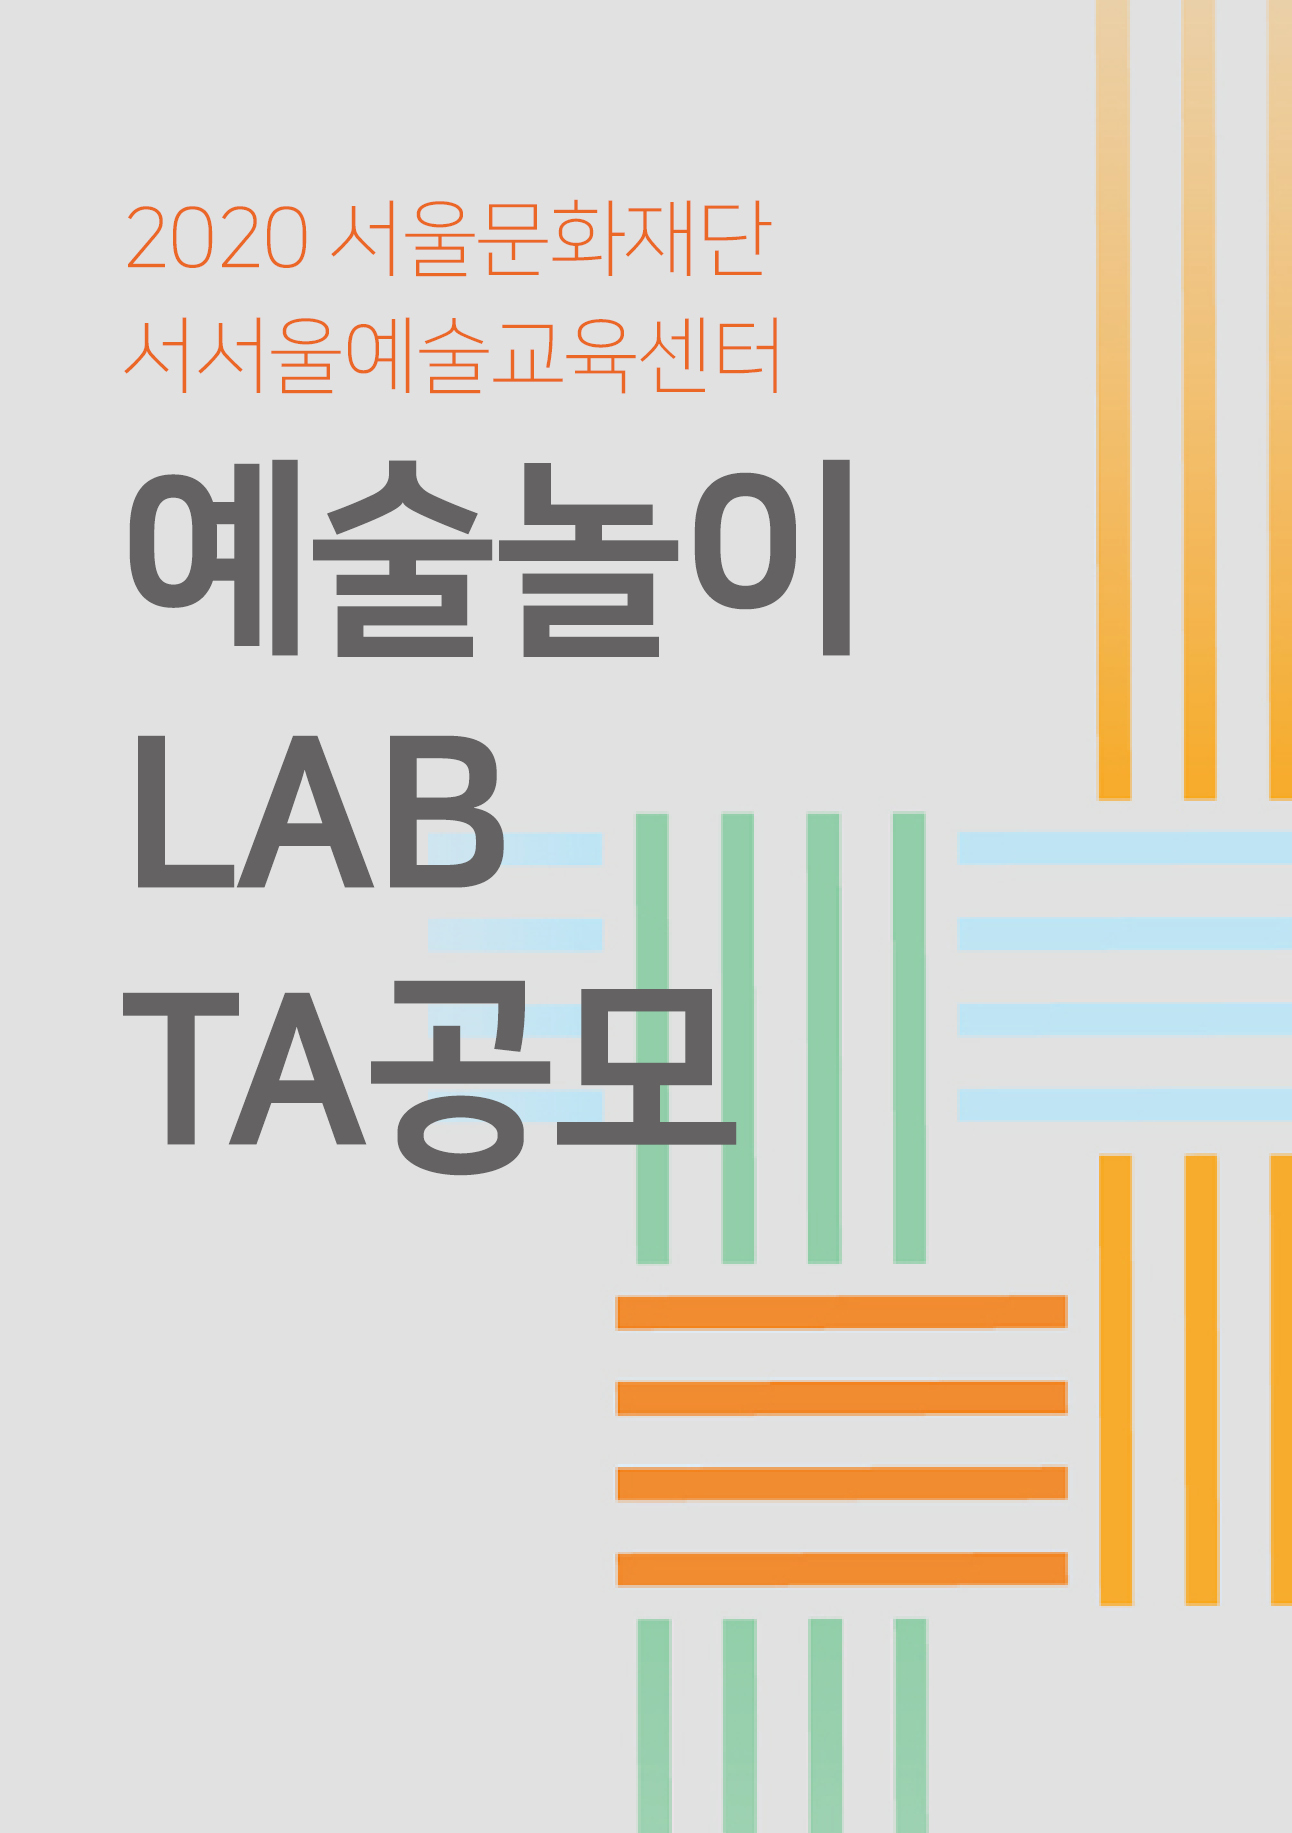 2020 서울문화재단 서서울예술교육센터 예술놀이 LAB TA 공모